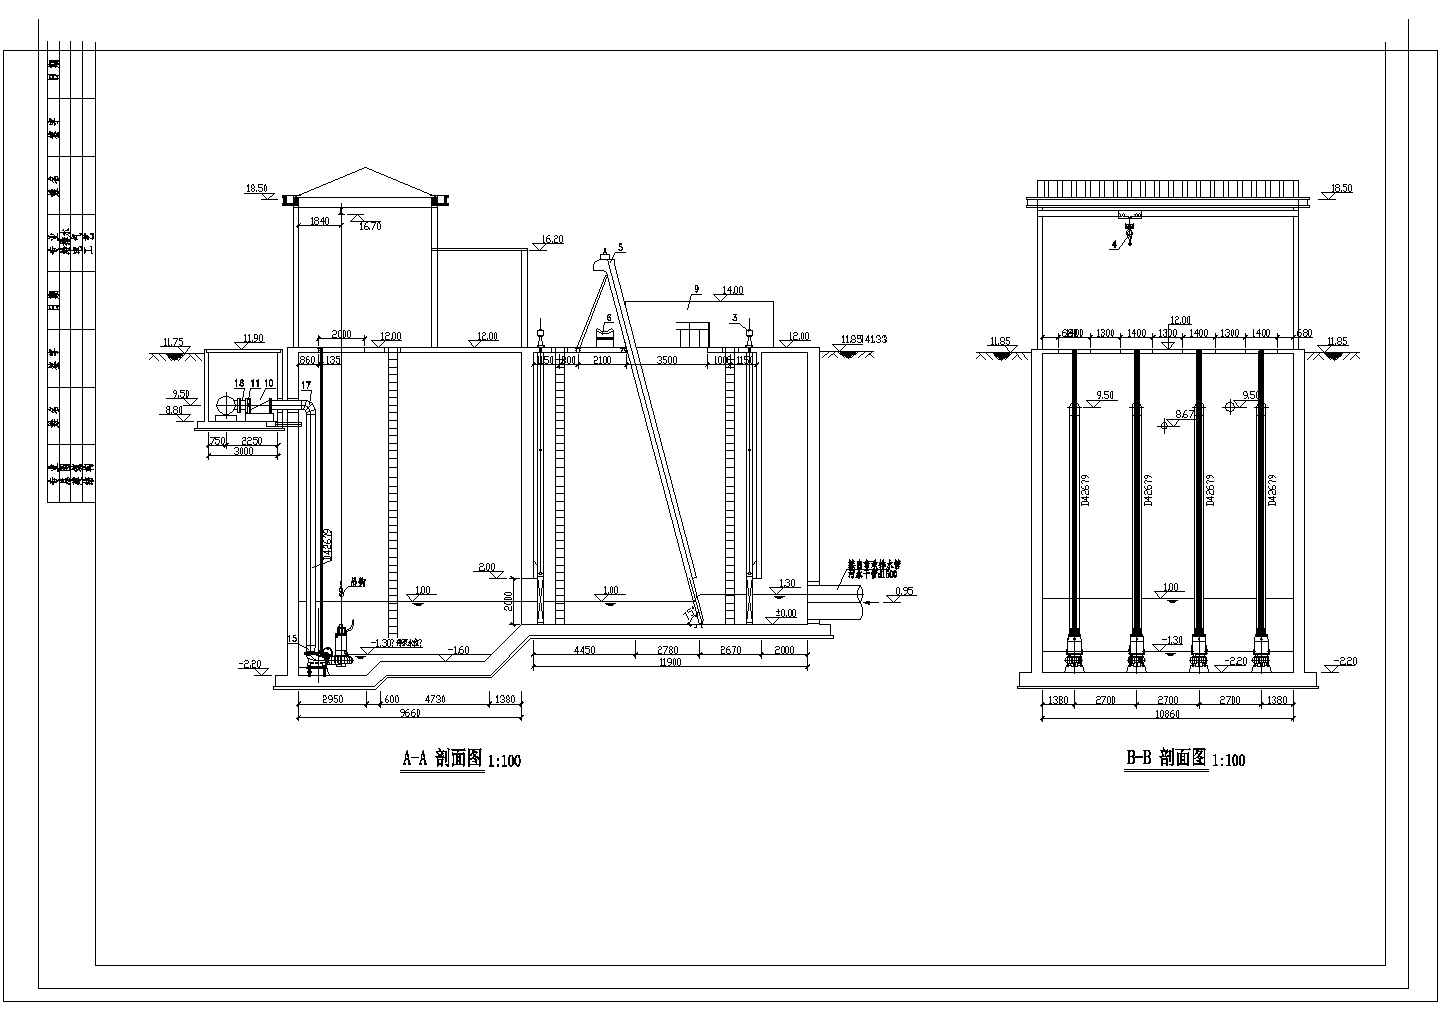 株洲某县污水处理厂CAD环保设计构造施工图纸